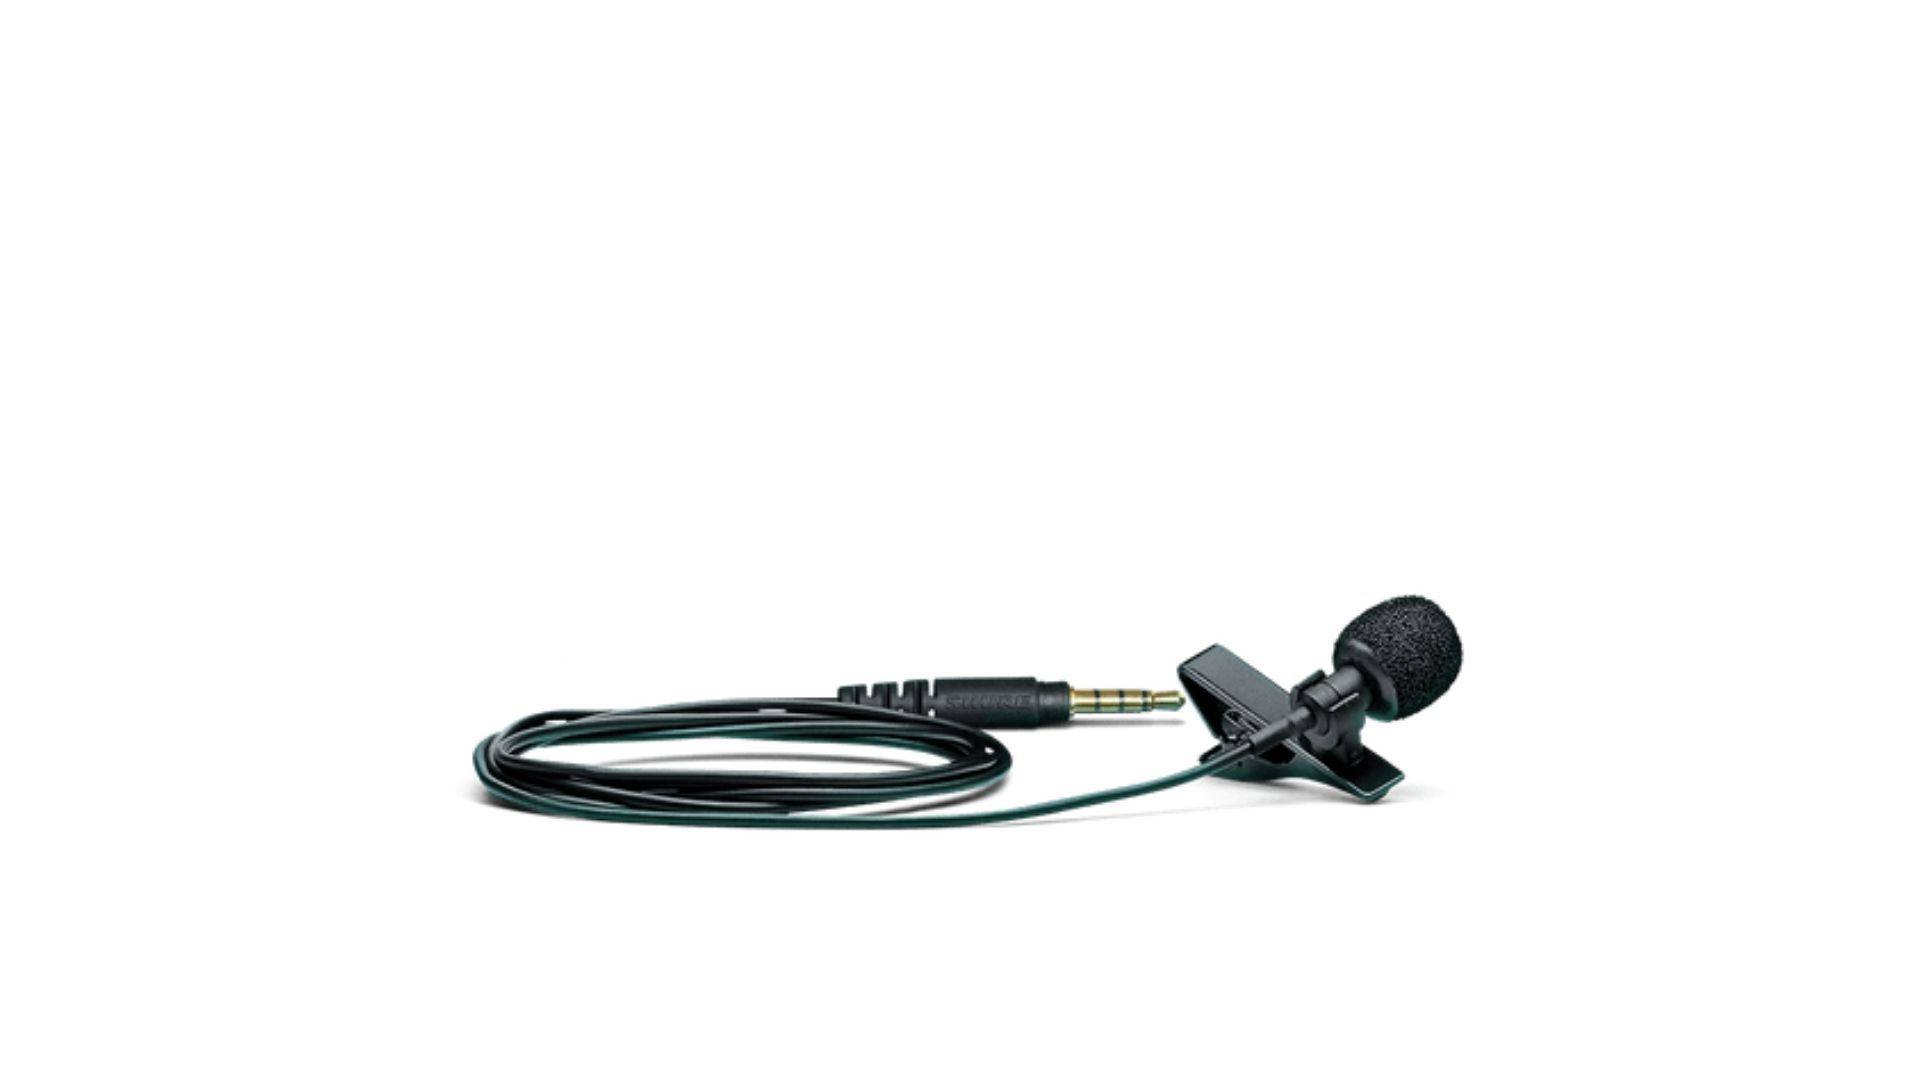 Microfone para celular preto enrolado apoiado em uma superfície branca